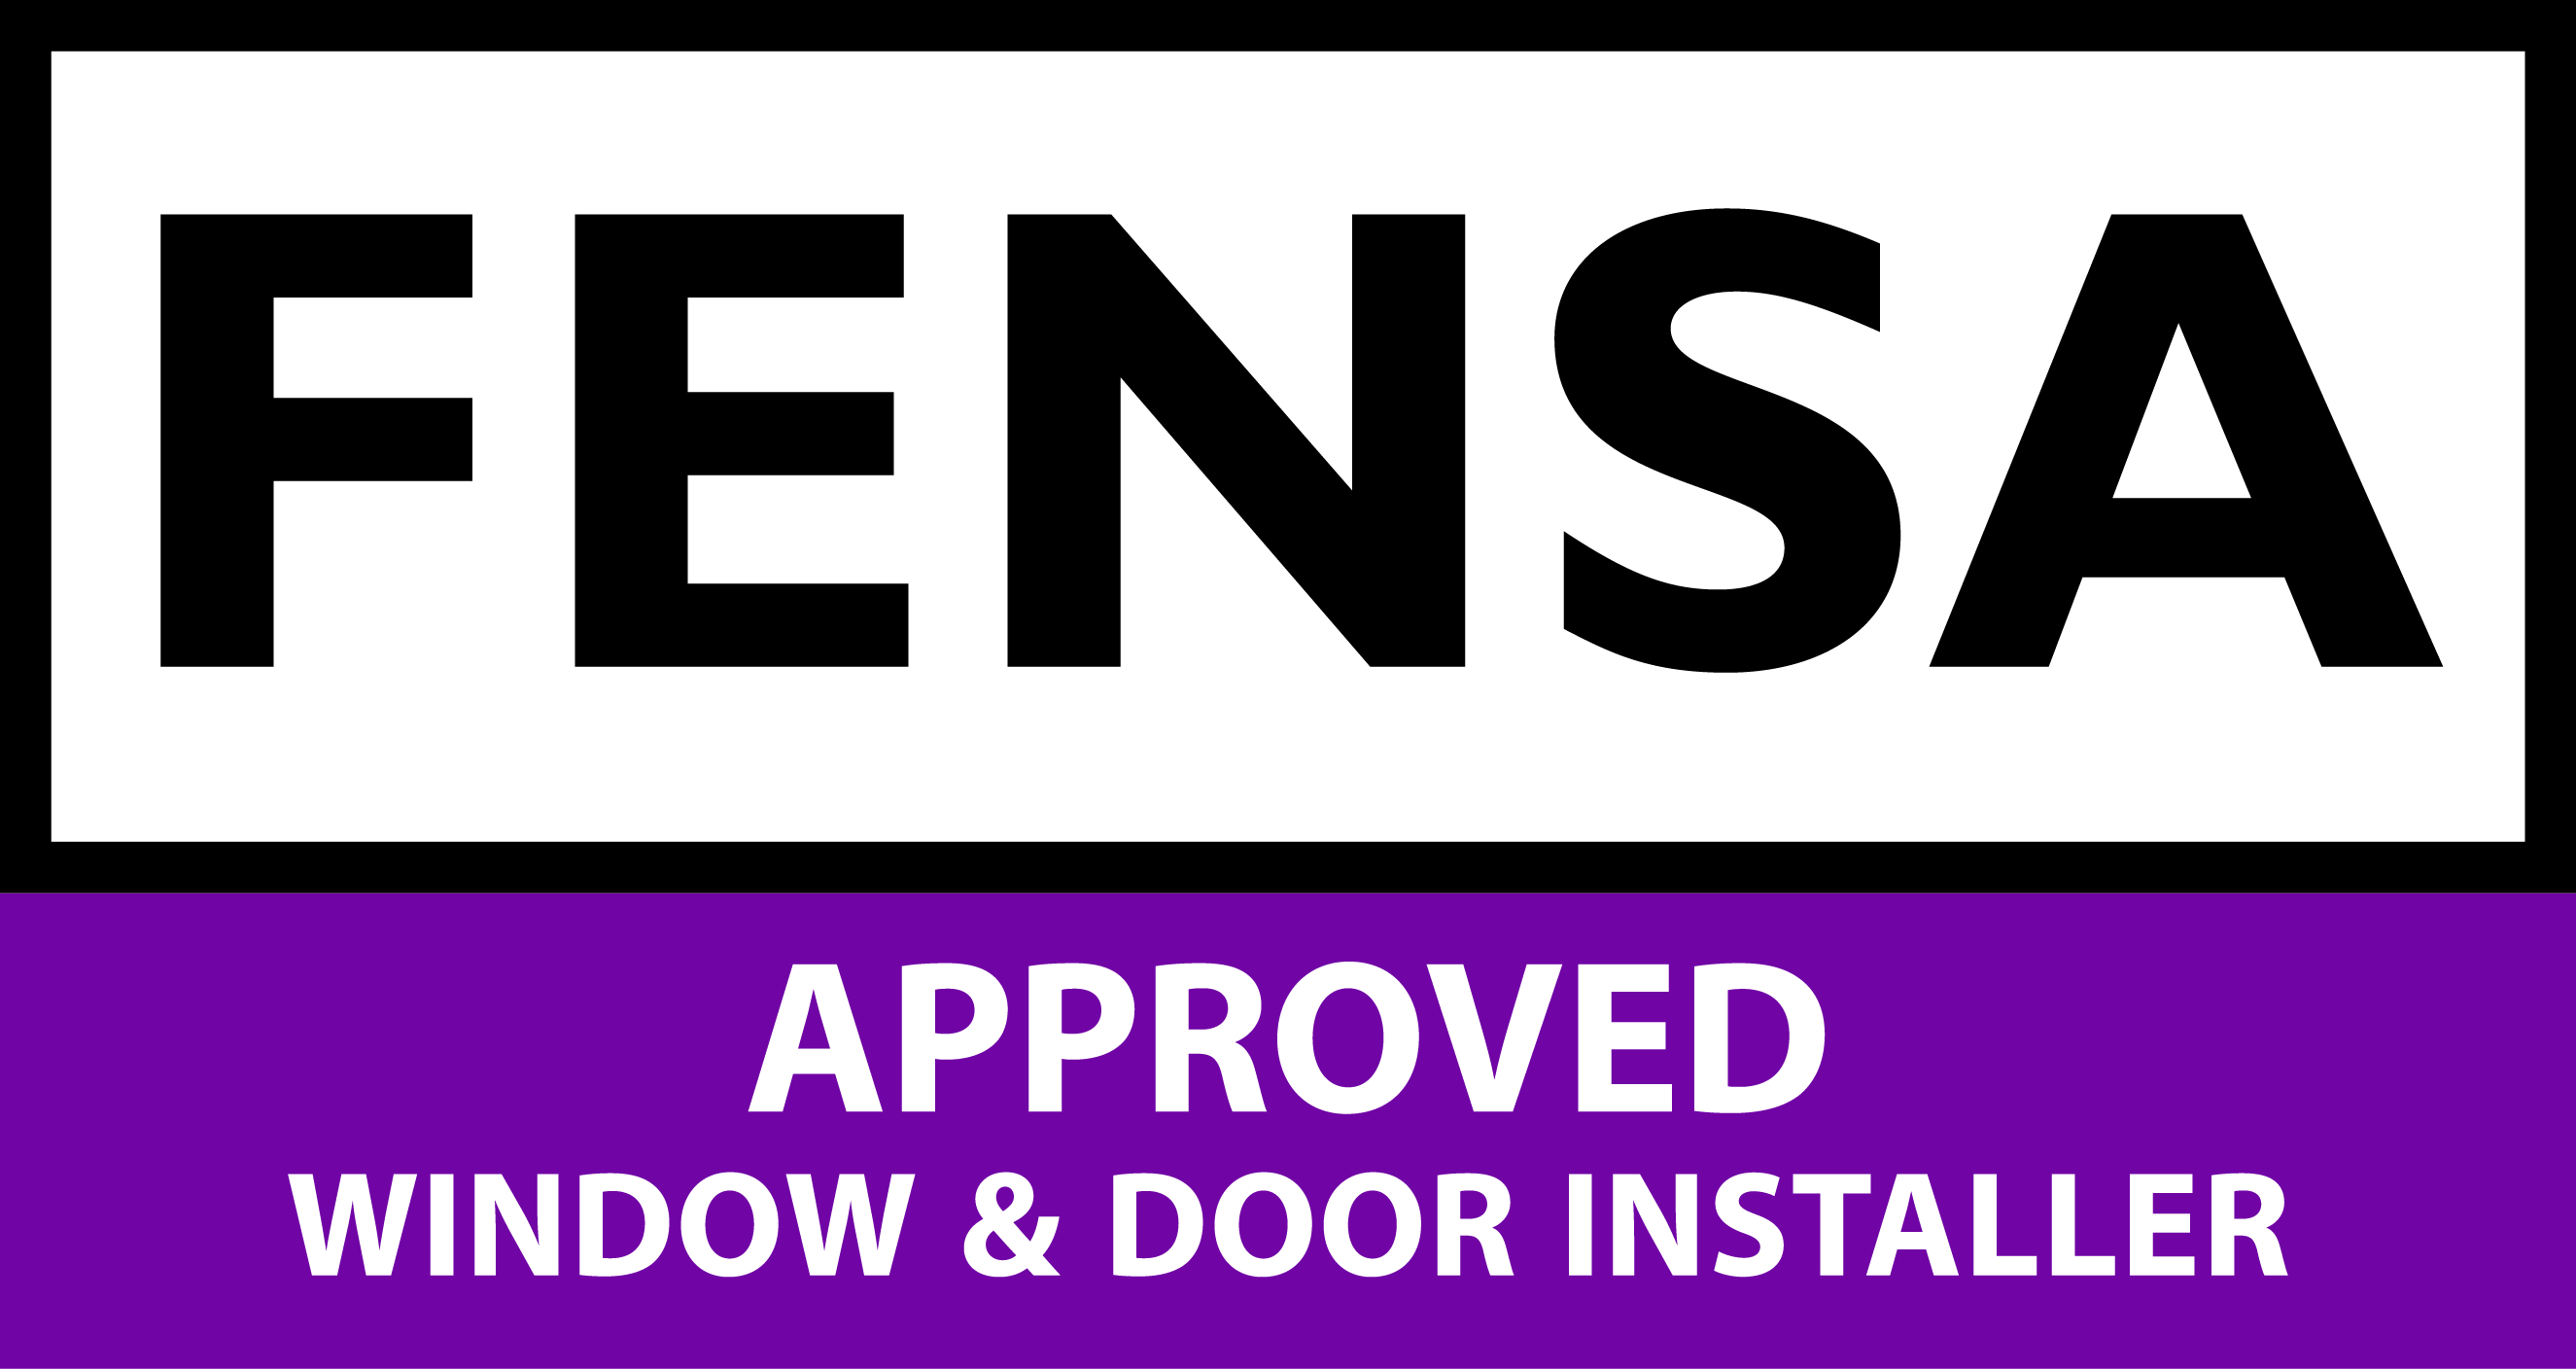 FENSA Approved Window & Door Installer